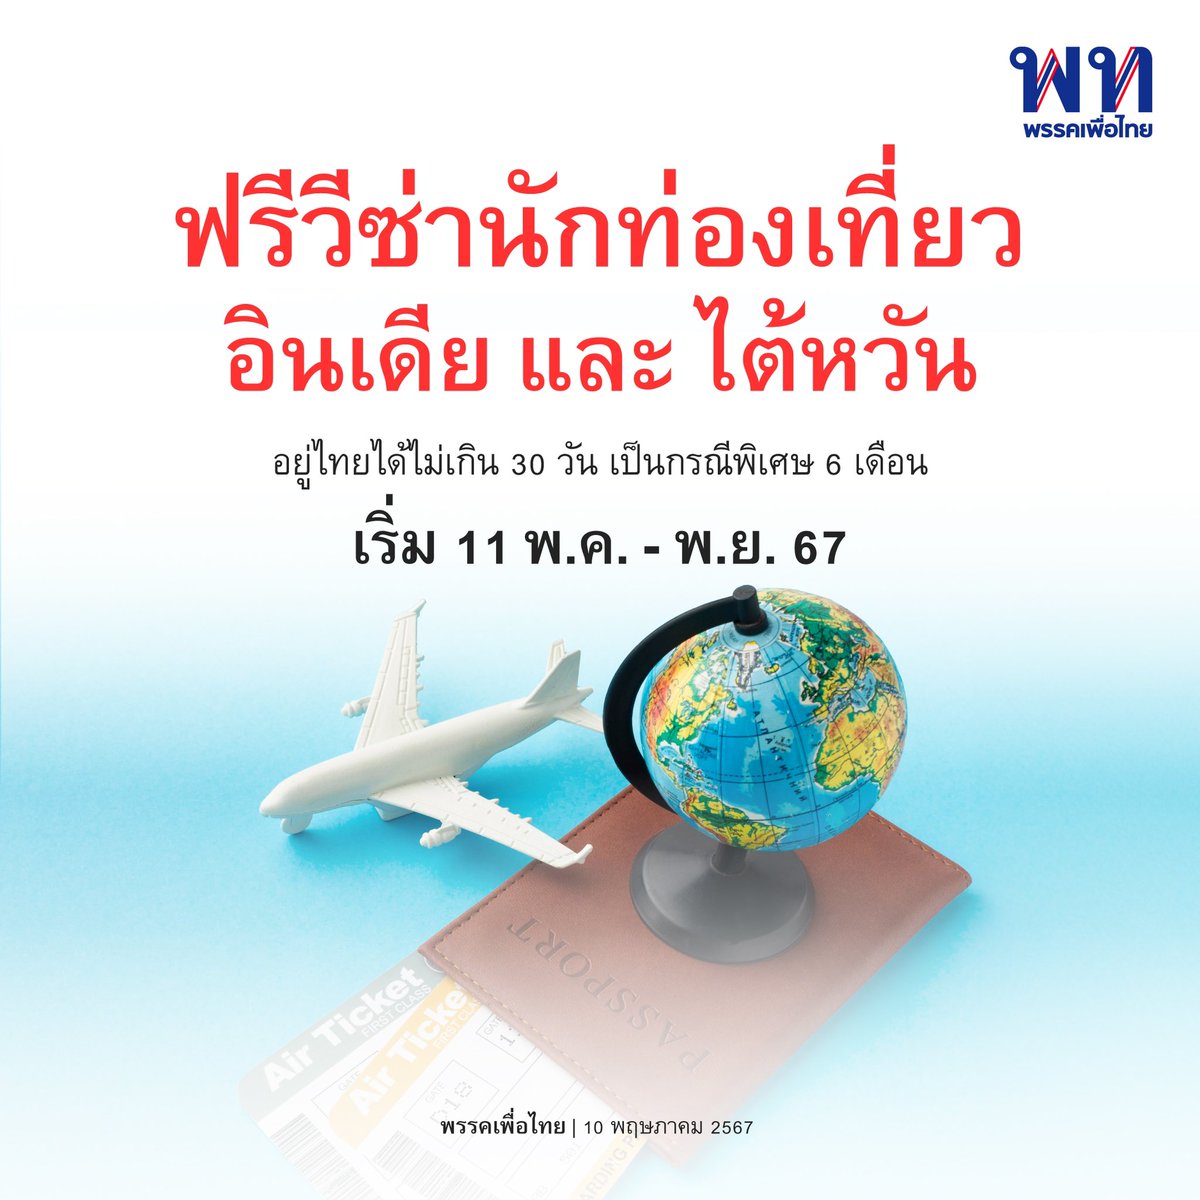 • ฟรีวีซ่านักท่องเที่ยวอินเดีย ไต้หวัน อยู่ไทย 30 วันได้ 6 เดือน จนถึงพฤศจิกายนนี้ • 

10 พฤษภาคม 2567 เว็บไซต์ราชกิจจานุเบกษา ได้เผยแพร่ ประกาศกระทรวงมหาดไทย เรื่อง กำหนดรายชื่อประเทศที่ผู้ถือหนังสือเดินทางหรือเอกสารใช้แทนหนังสือเดินทาง ซึ่งเข้ามาในราชอาณาจักรเป็นการชั่วคราว